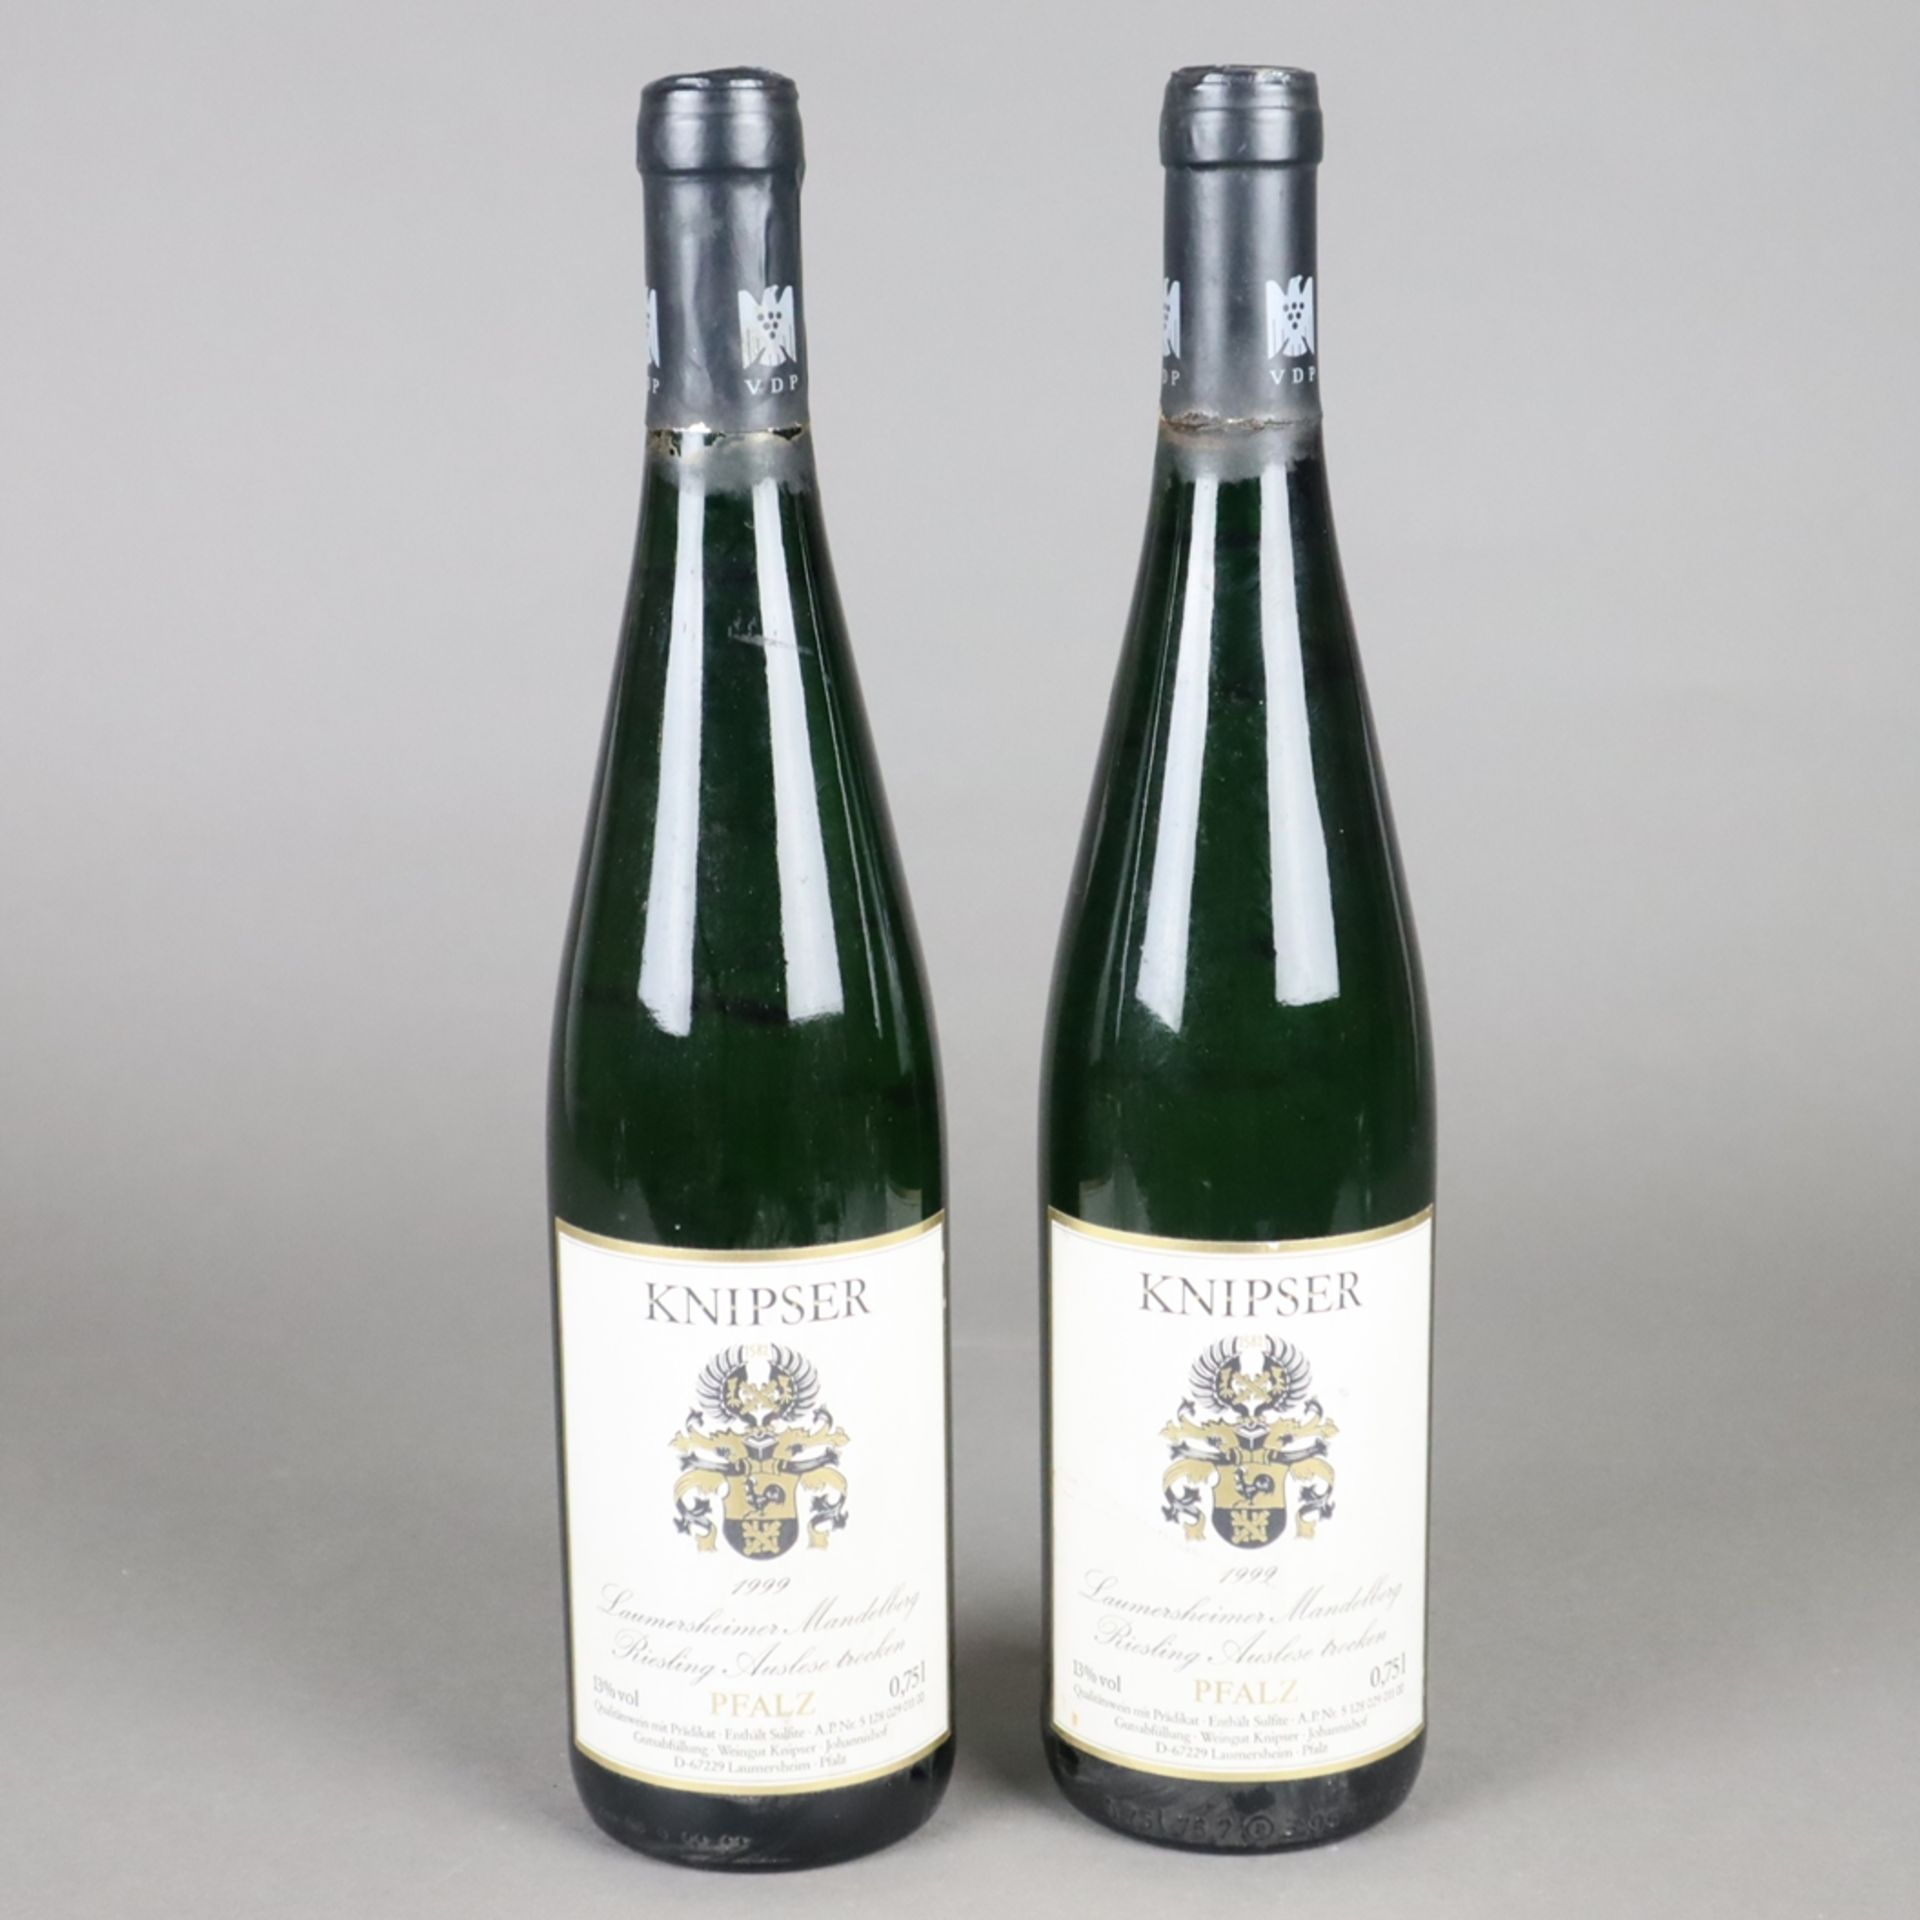 Weinkonvolut - 2 Flaschen 1999er Laumersheimer Mandelberg, Riesling Auslese, We